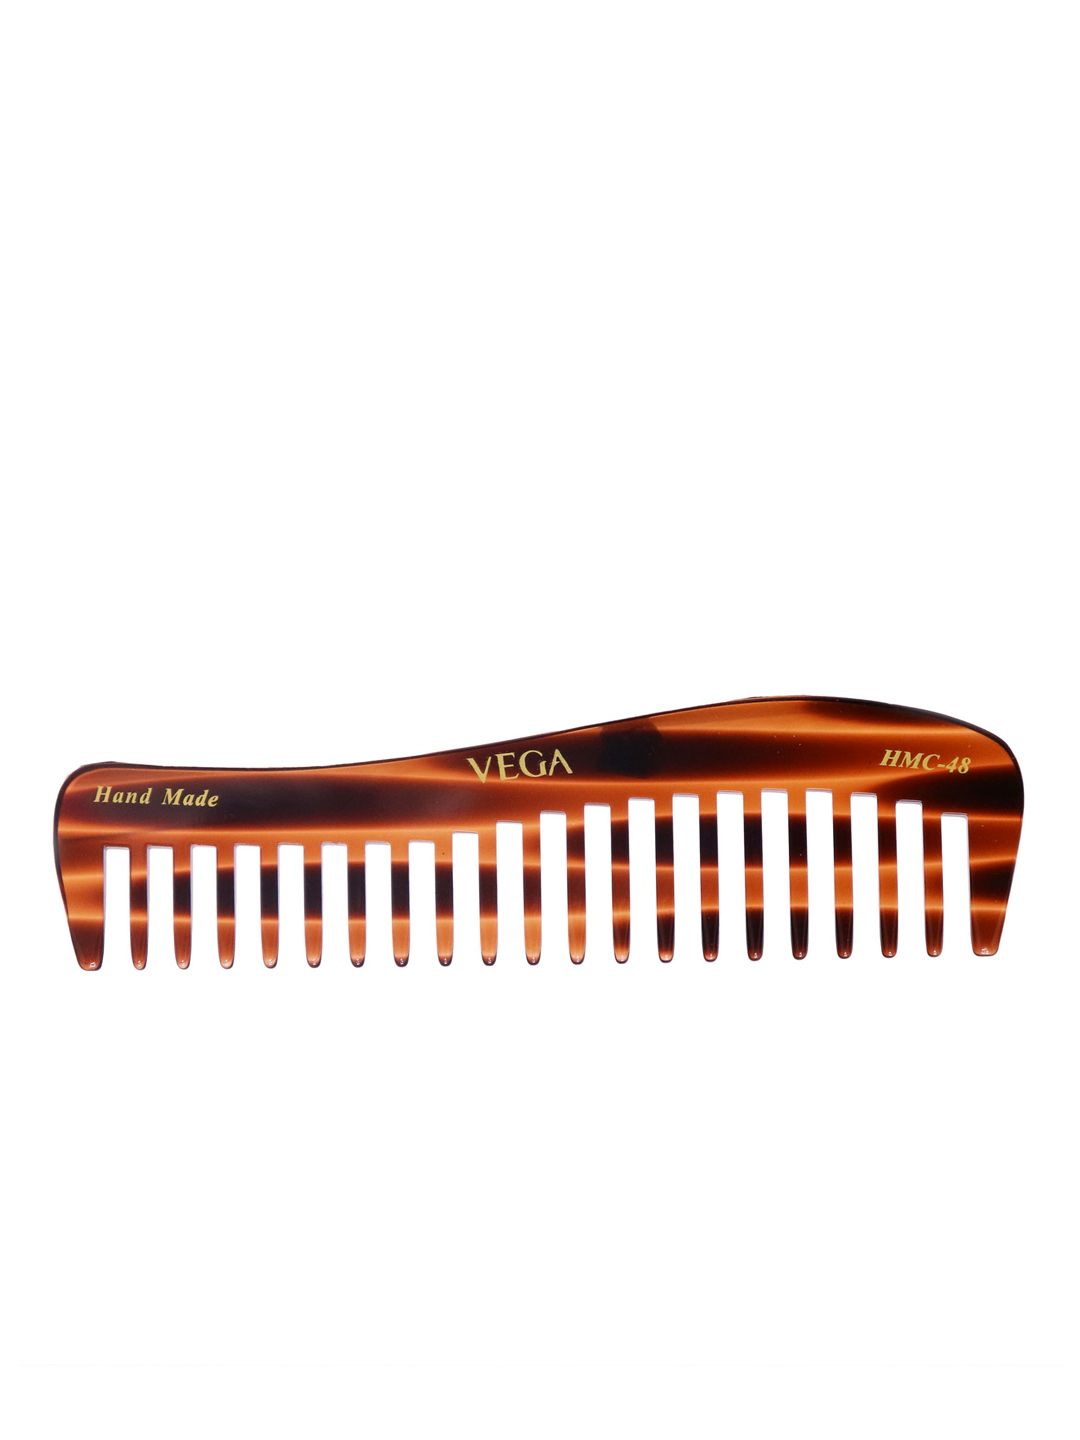 VEGA Unisex Brown Shampoo Comb_HMC-48 Price in India